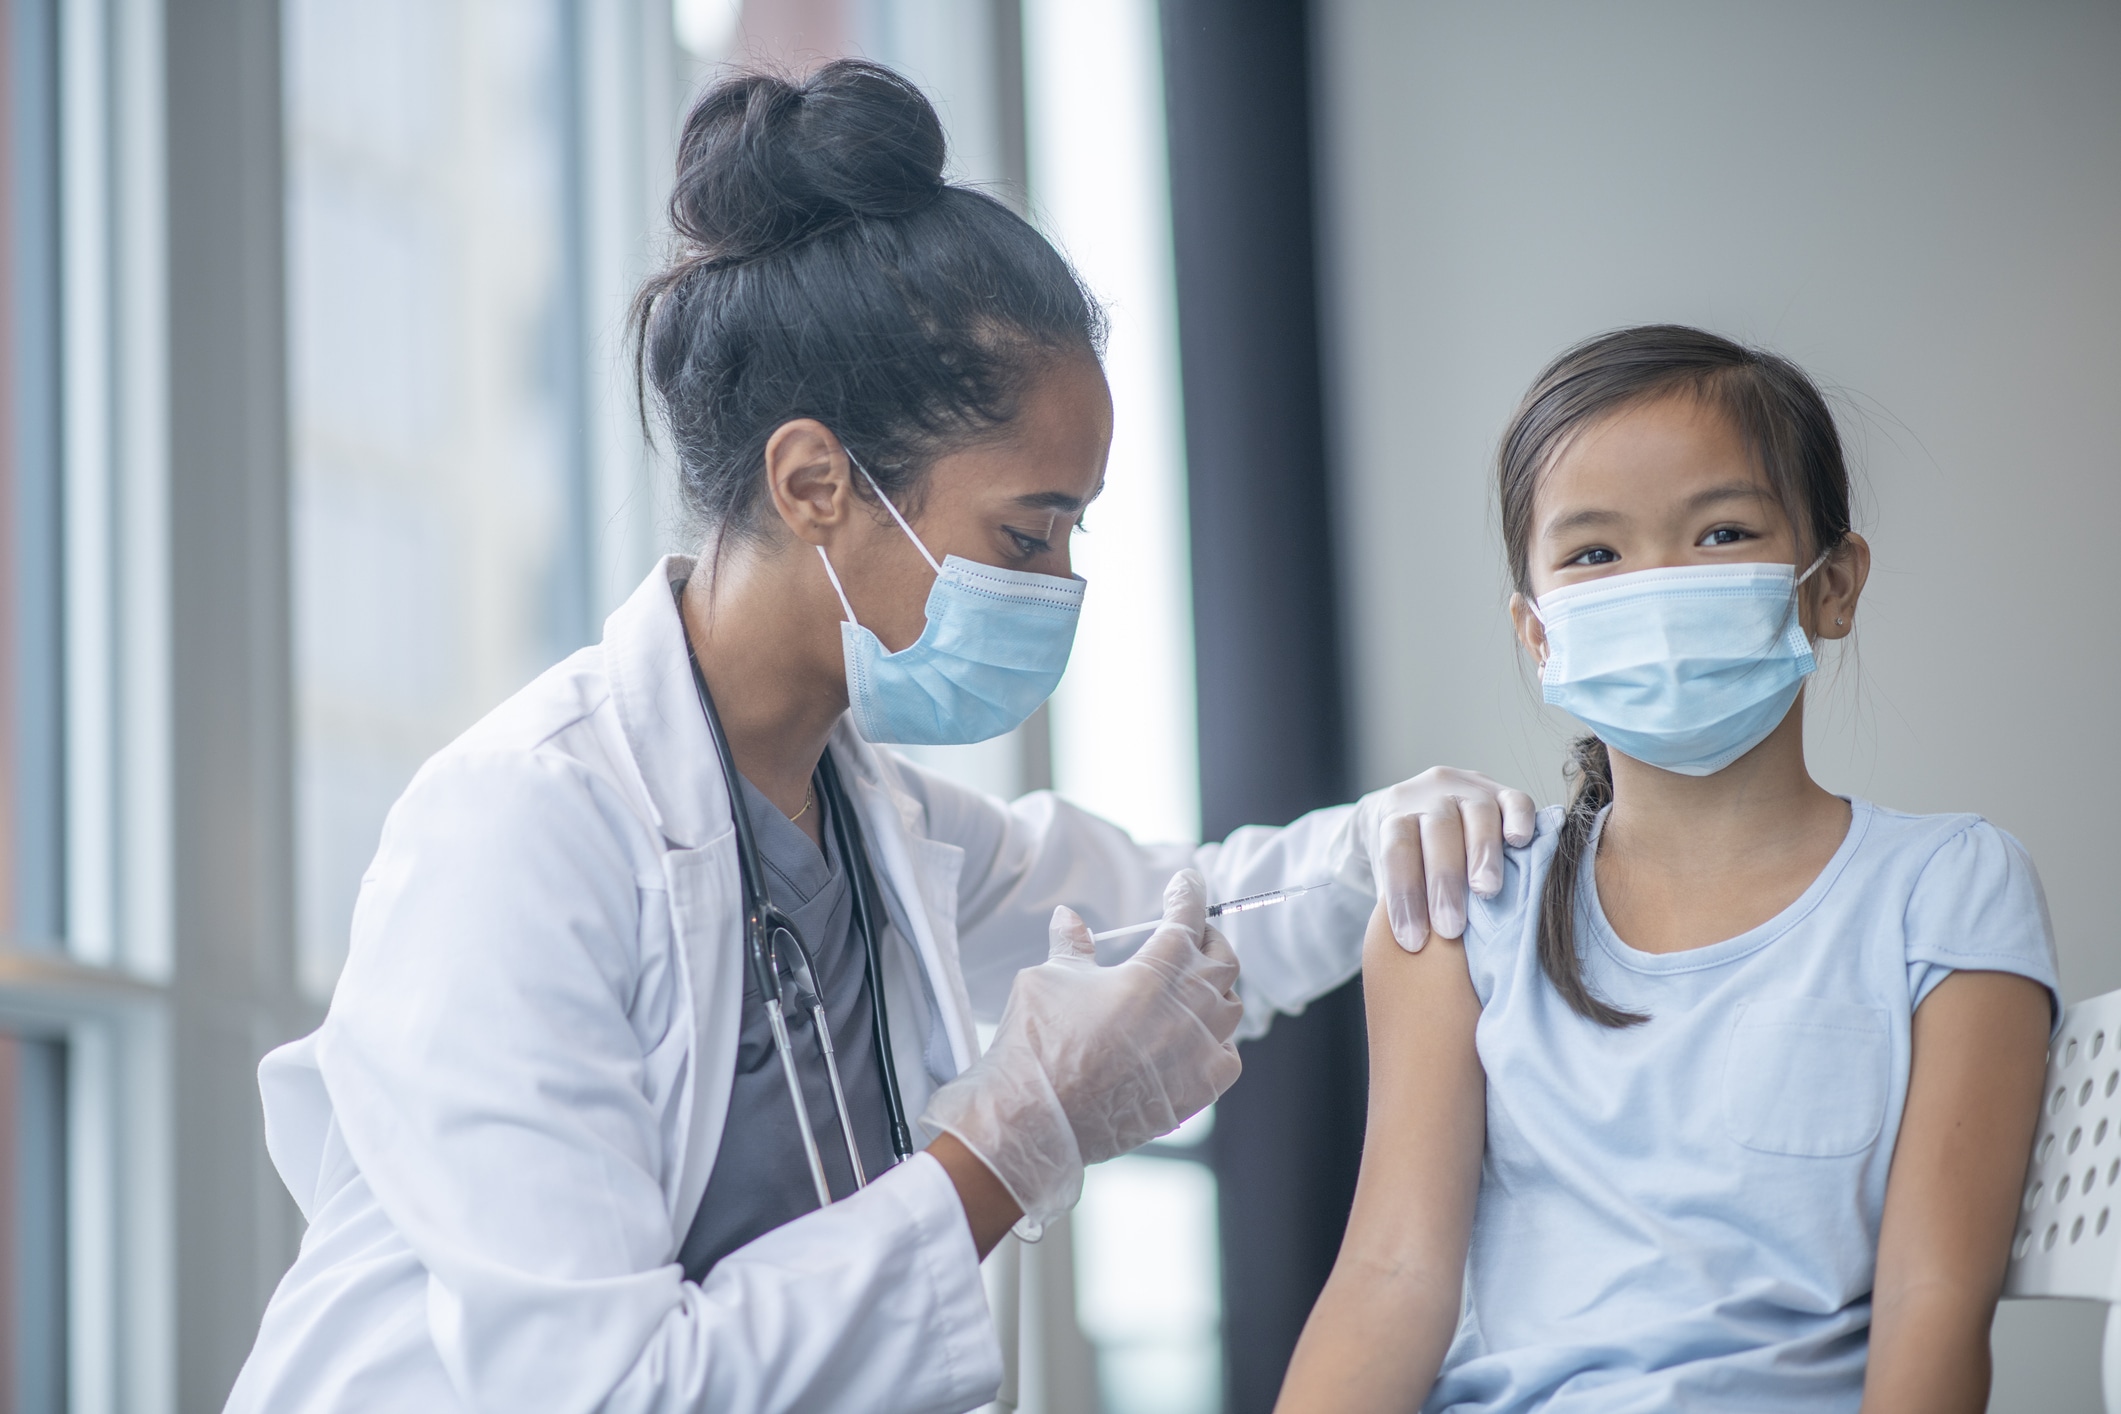 Nurses Prepare for COVID-19 Vaccination for Children